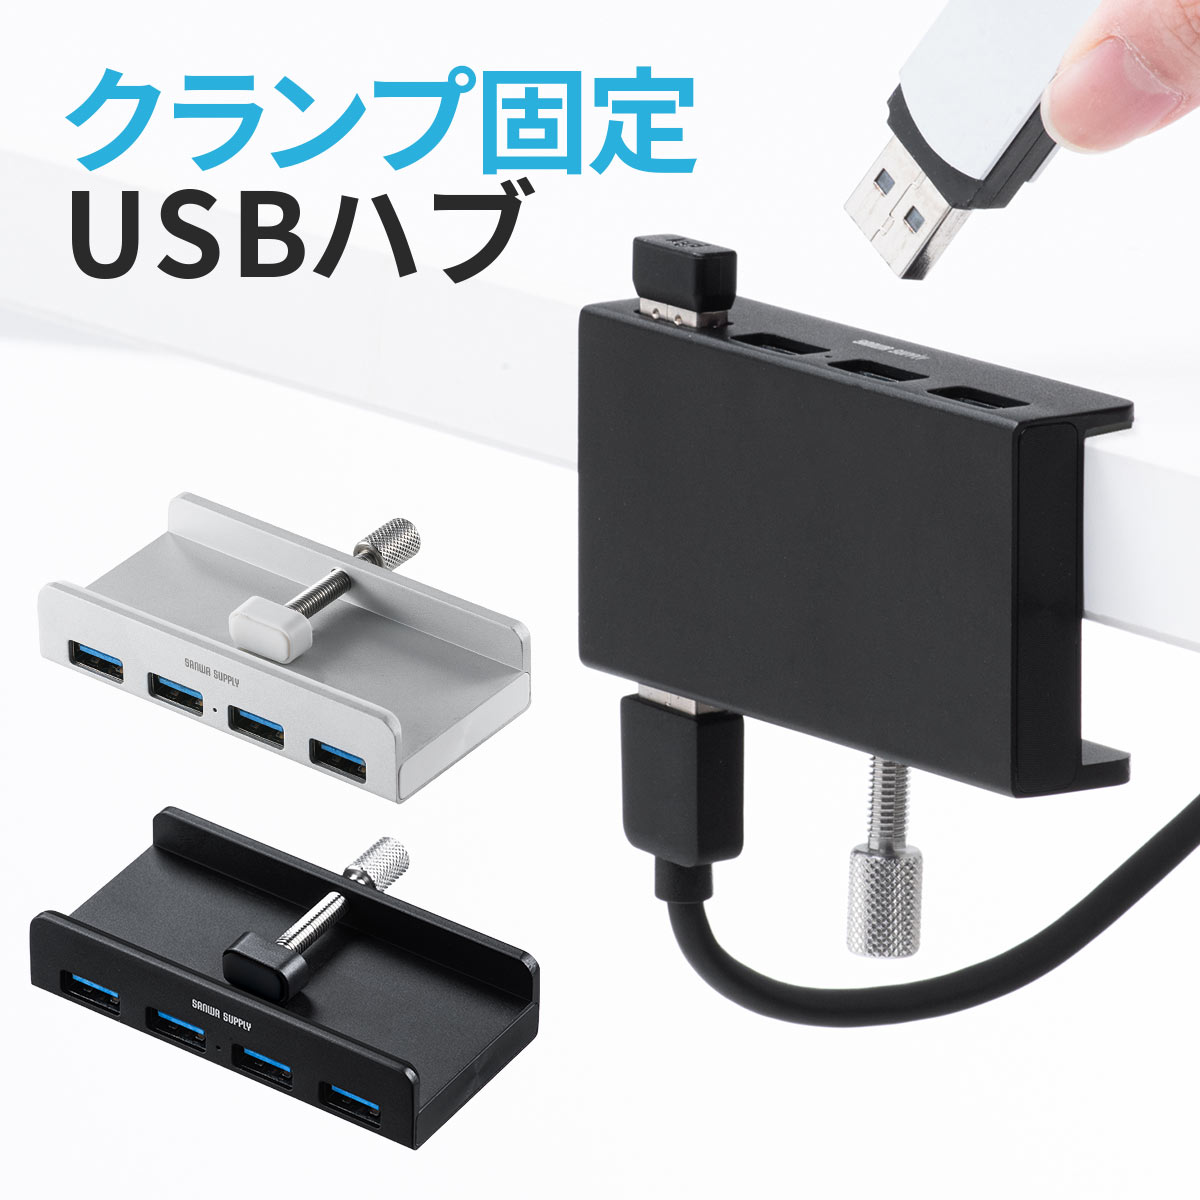 USBハブ クランプ 4ポート デスク 固定 クランプハブ クランプ式USBハブ クリップ式 USB3.1 3.0 Gen1 バスパワー ケ…